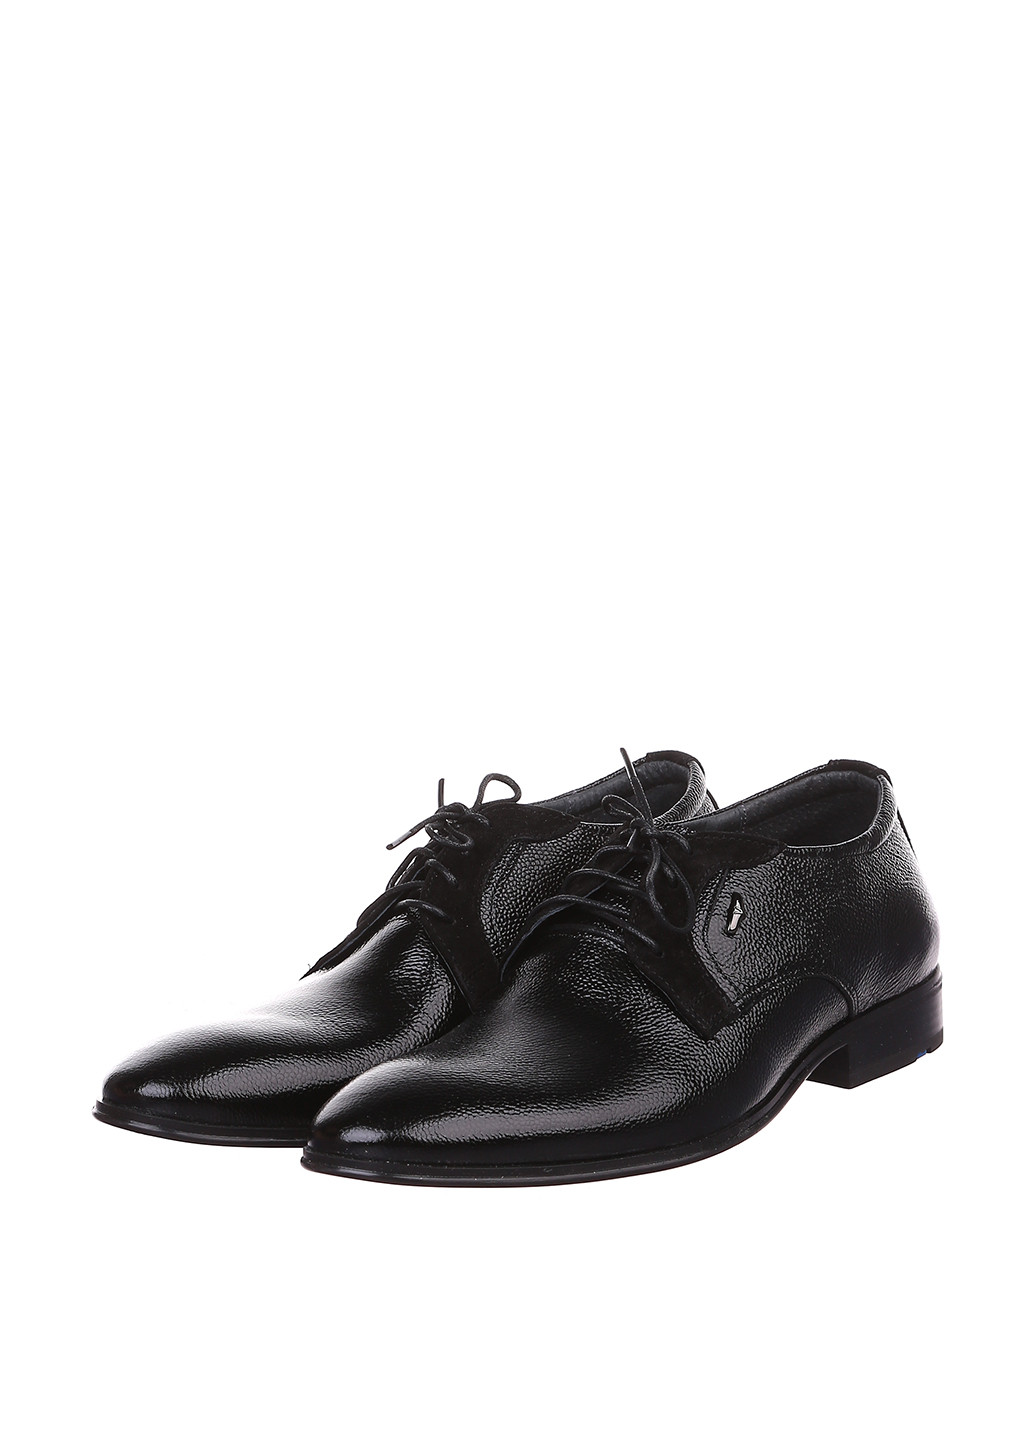 Черные классические туфли Romano Sicari на шнурках